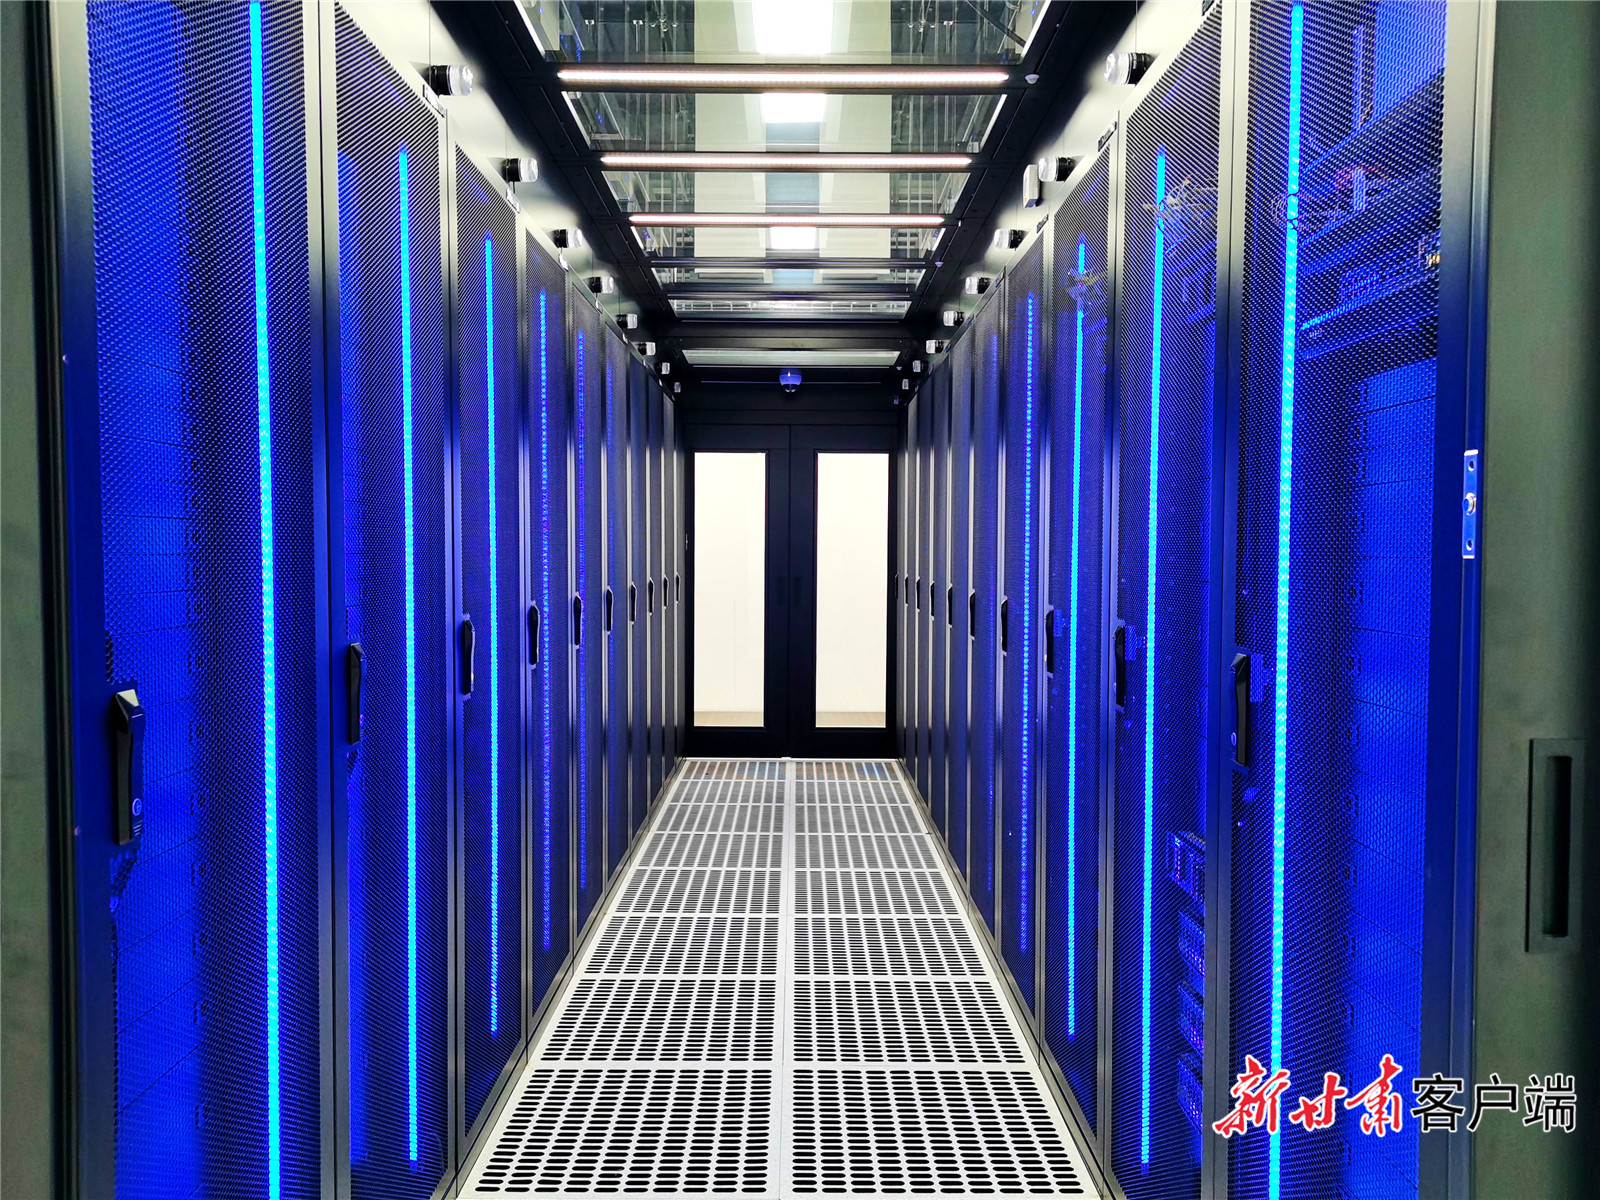 7甘肃电投集团投资开发建设的金昌紫金云大数据中心已投入运营的国际T3等级机房.jpg